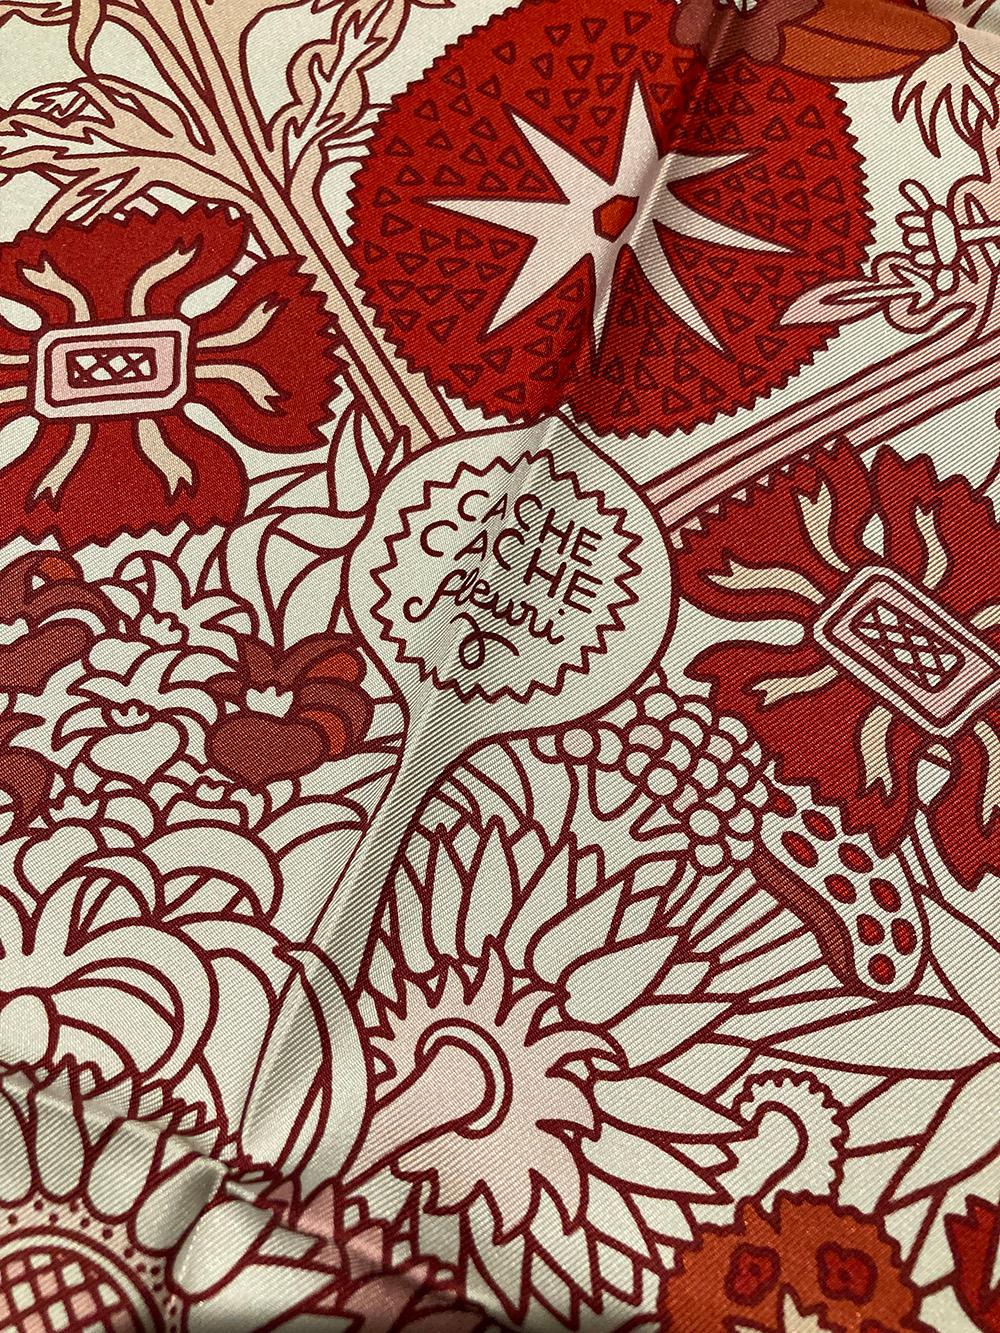 Pañuelo de seda Hermes Cache Cache Fleuri en rojo y blanco en estado nuevo. El diseño original en serigrafía c2018 de Pierre Marie presenta un 